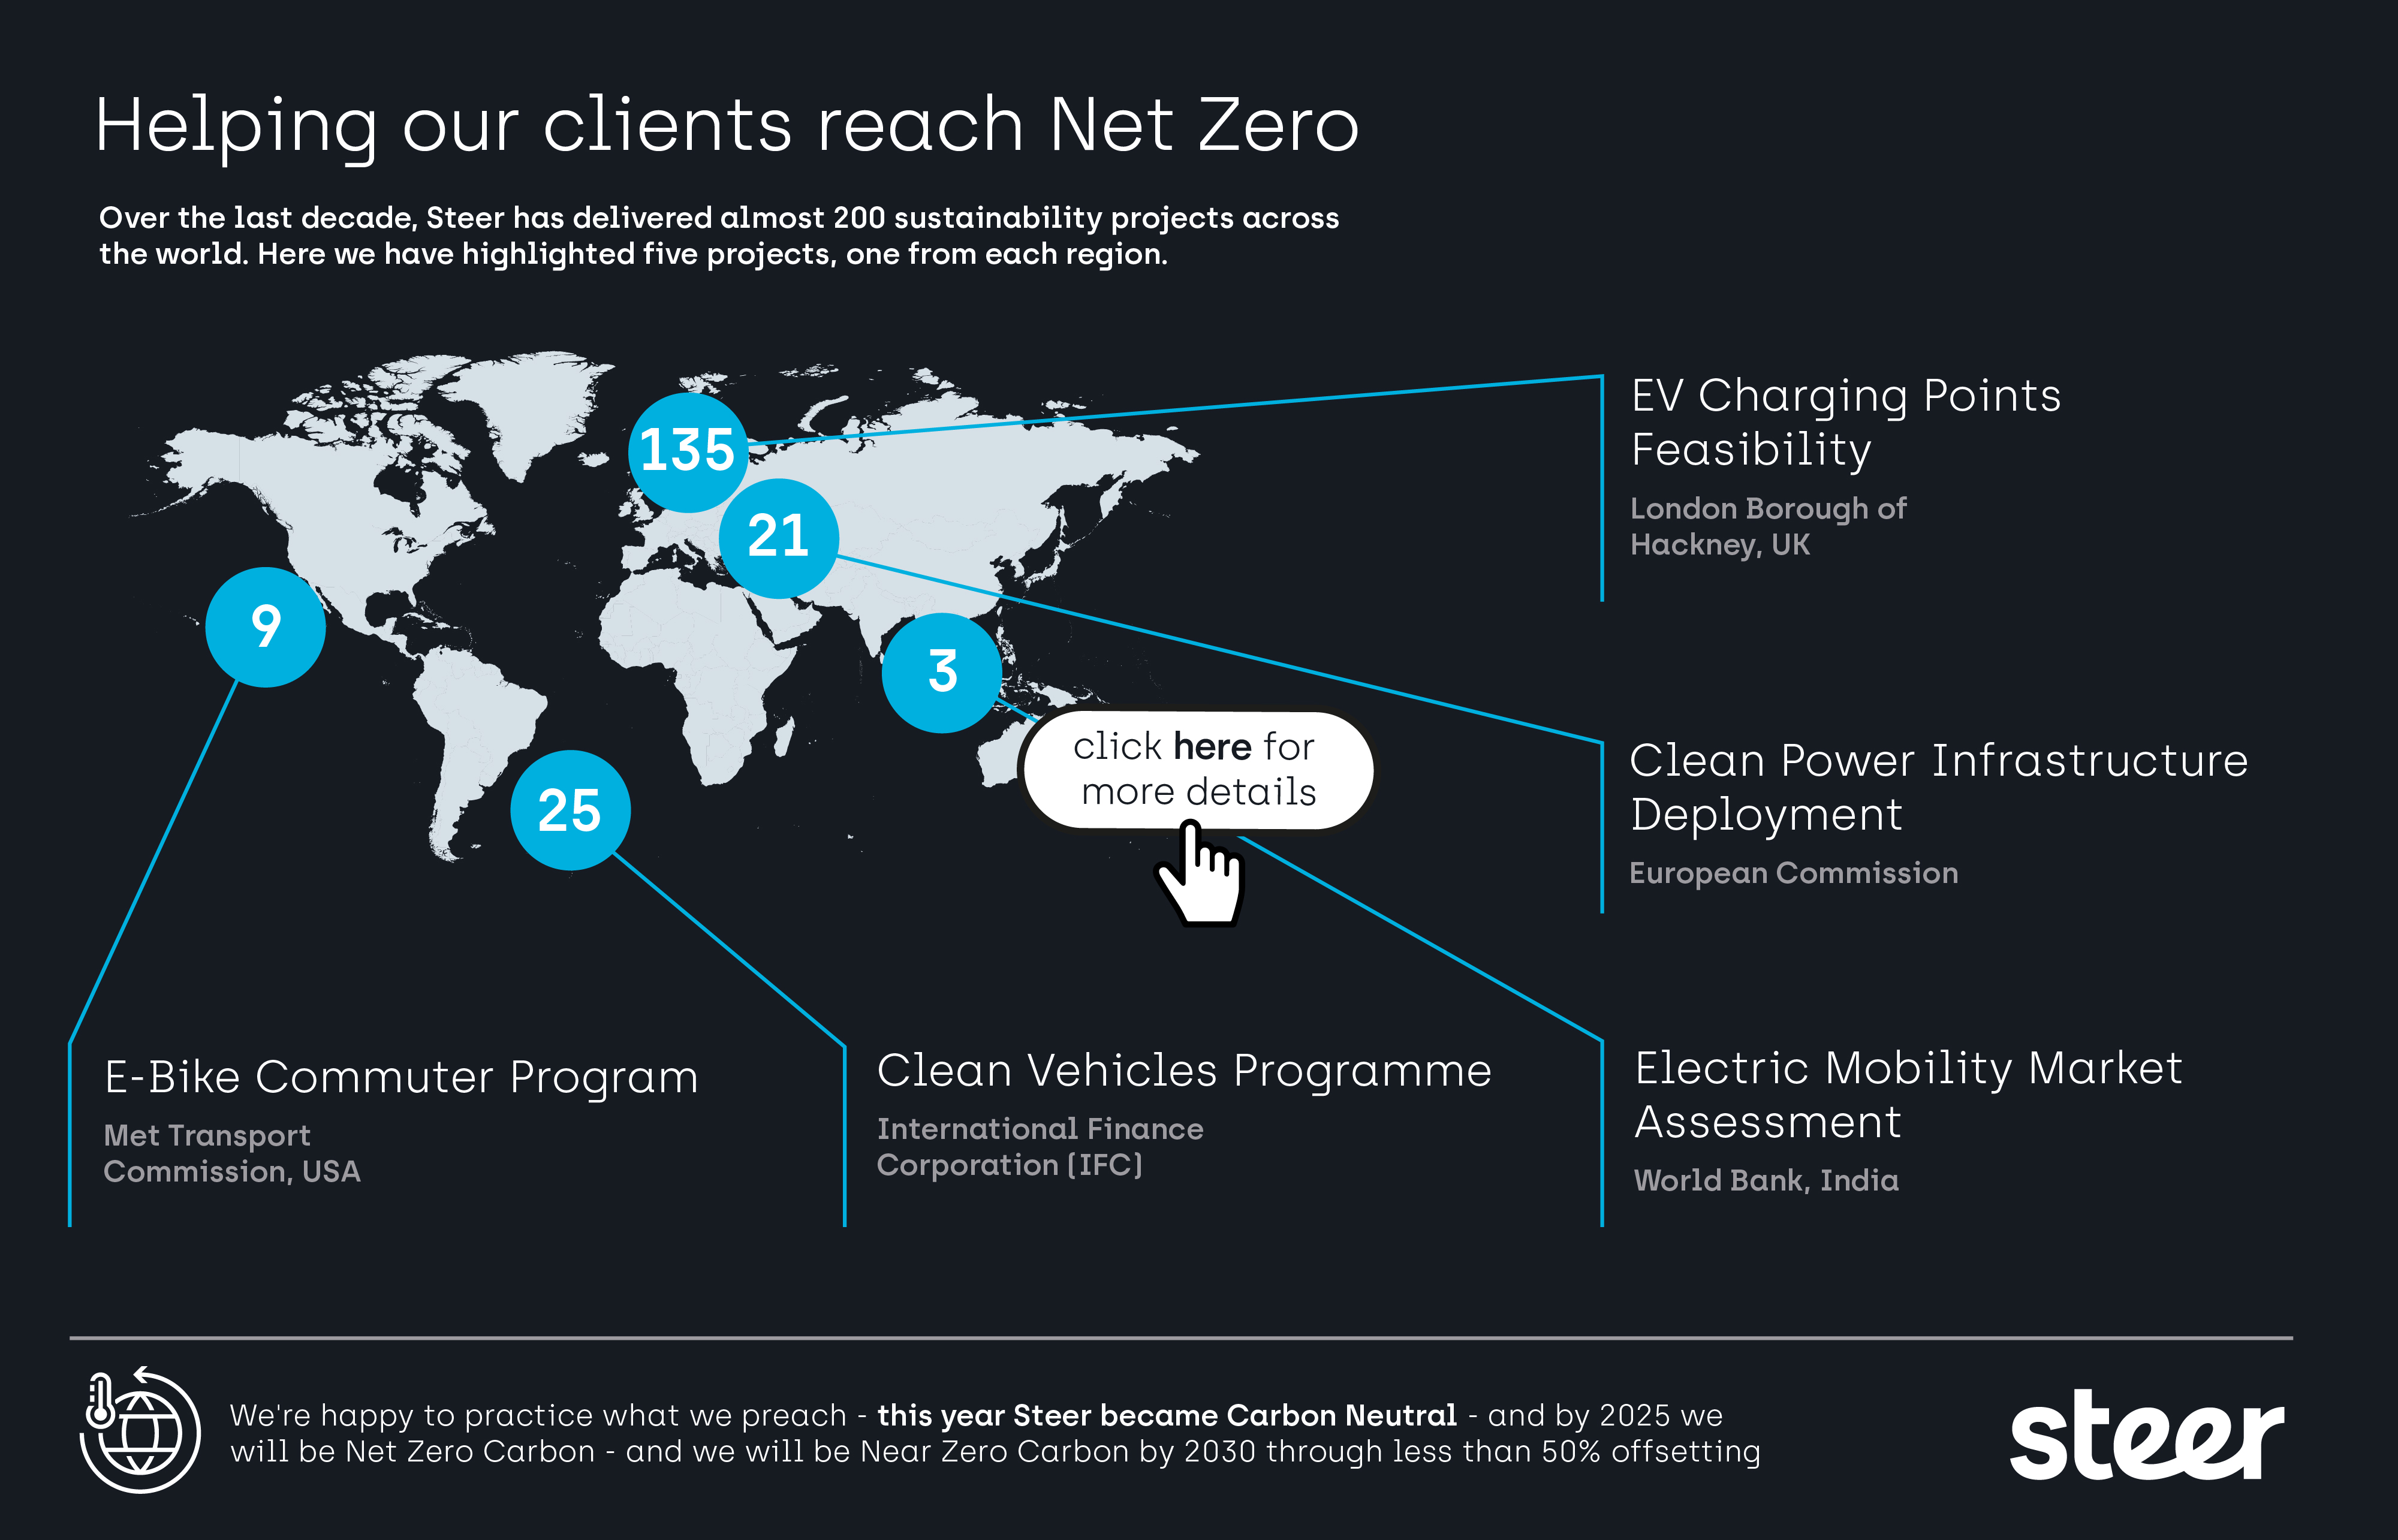 Steer key Net Zero projects